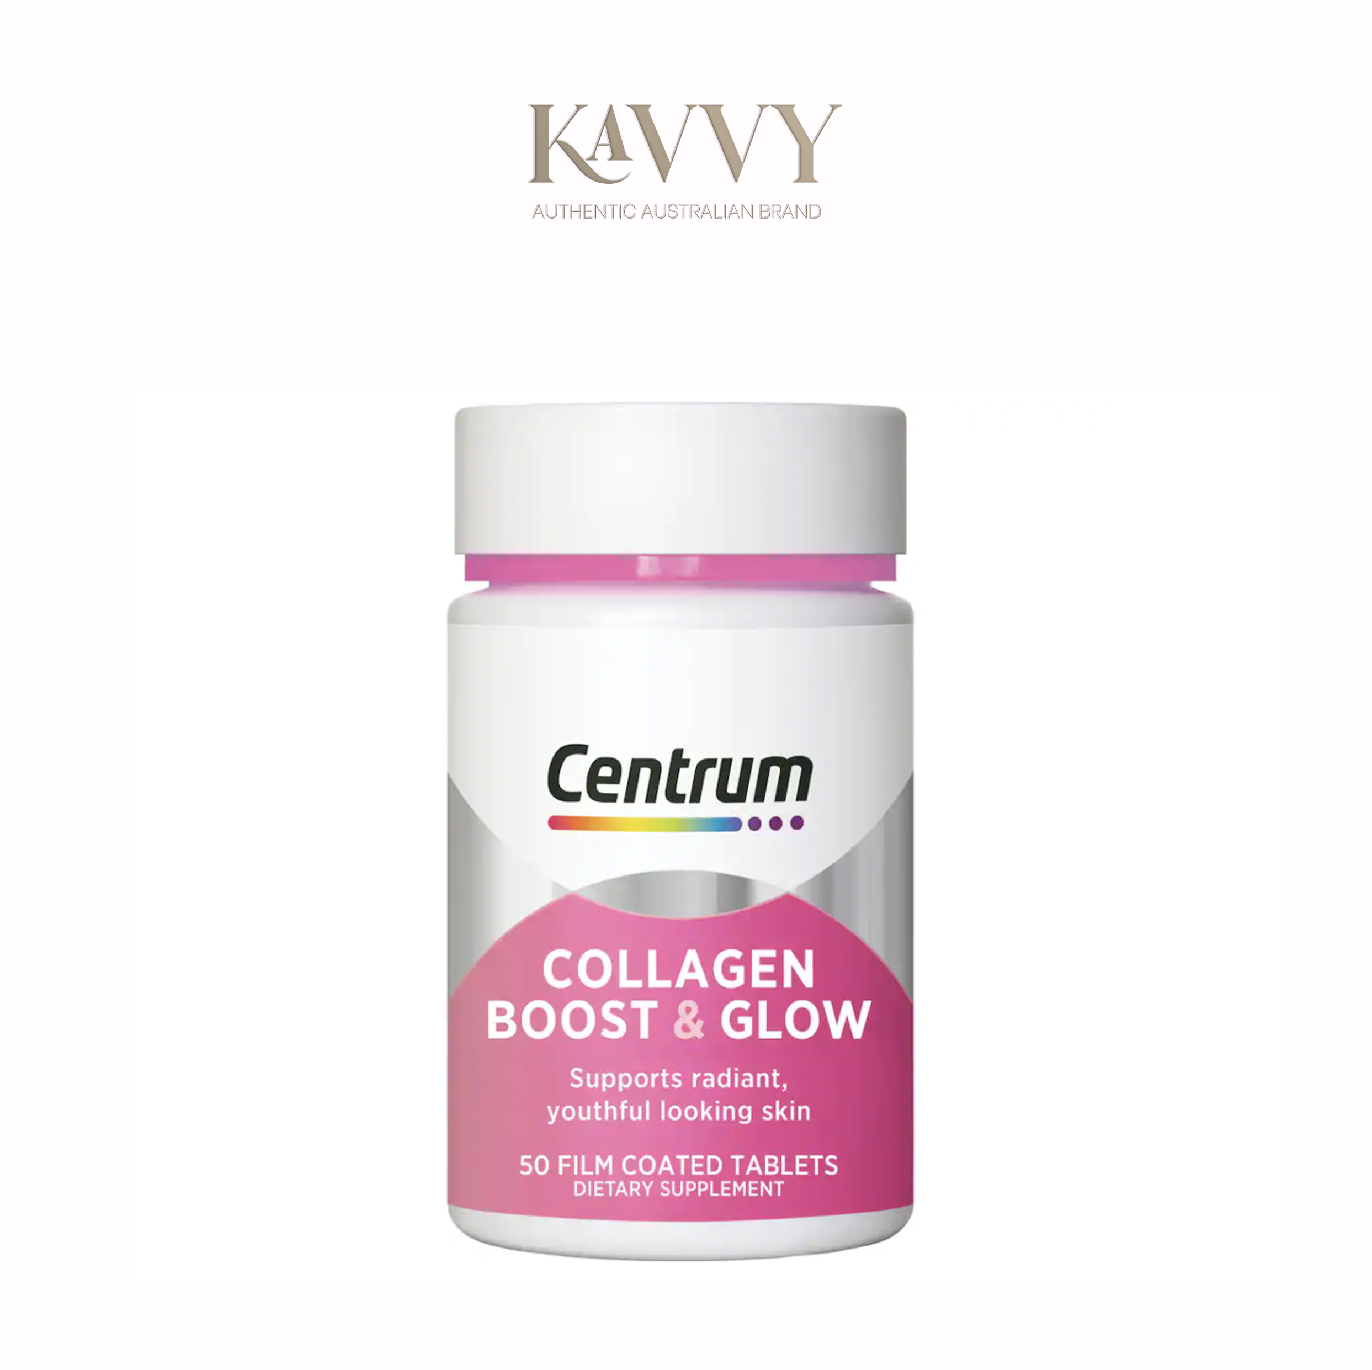 Viên uống Centrum Collagen Boost & Glow - Hộp 50 viên KAVVY